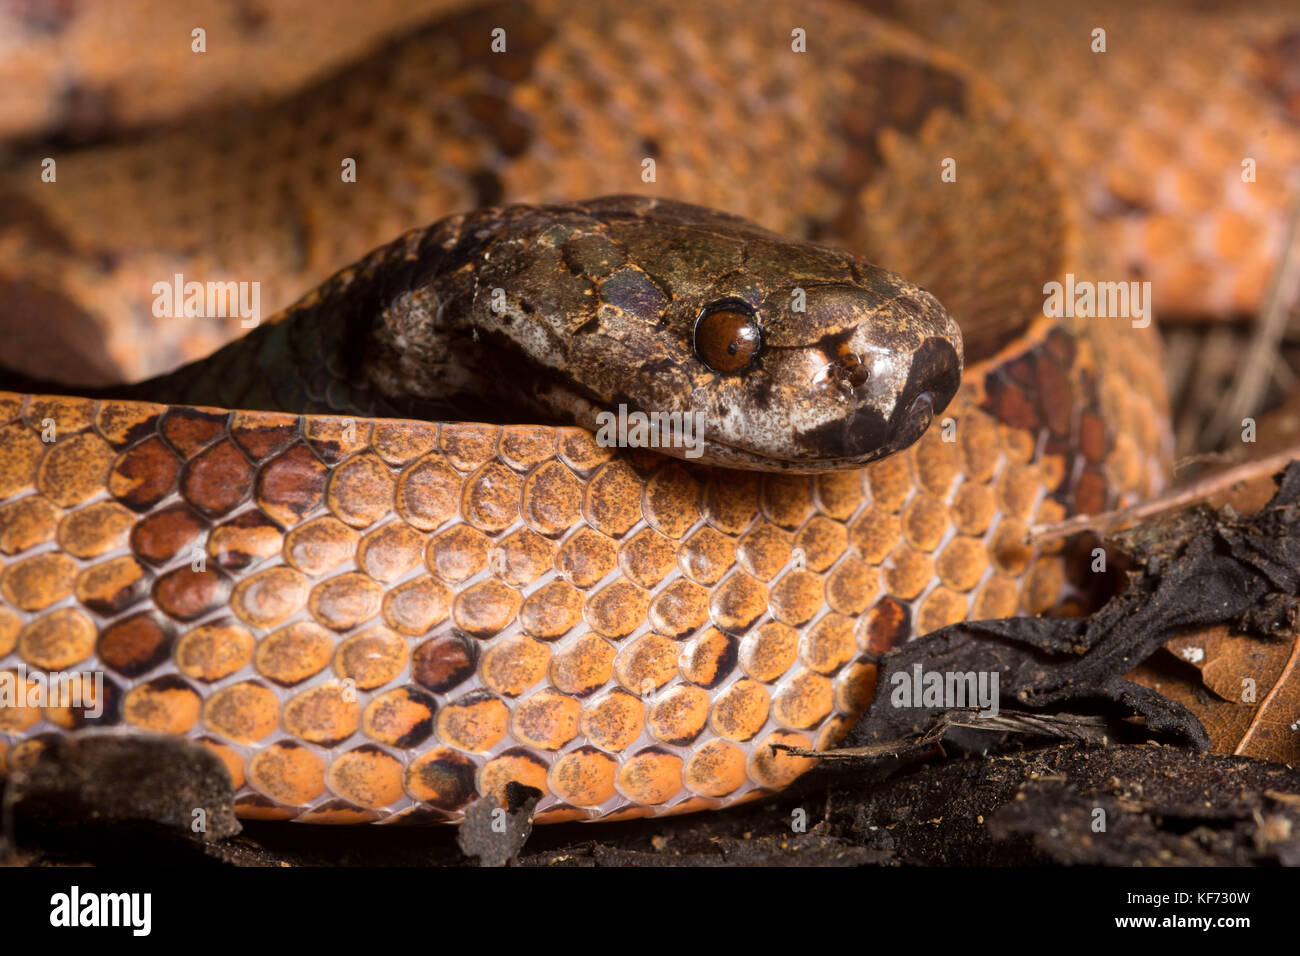 Precedentemente conosciuto come il serpente malese di lumaca (Athenodipsas malaccanus) in 2020 questo è stato diviso in una nuova specie (Athenodipsas borneensis) da Borneo. Foto Stock